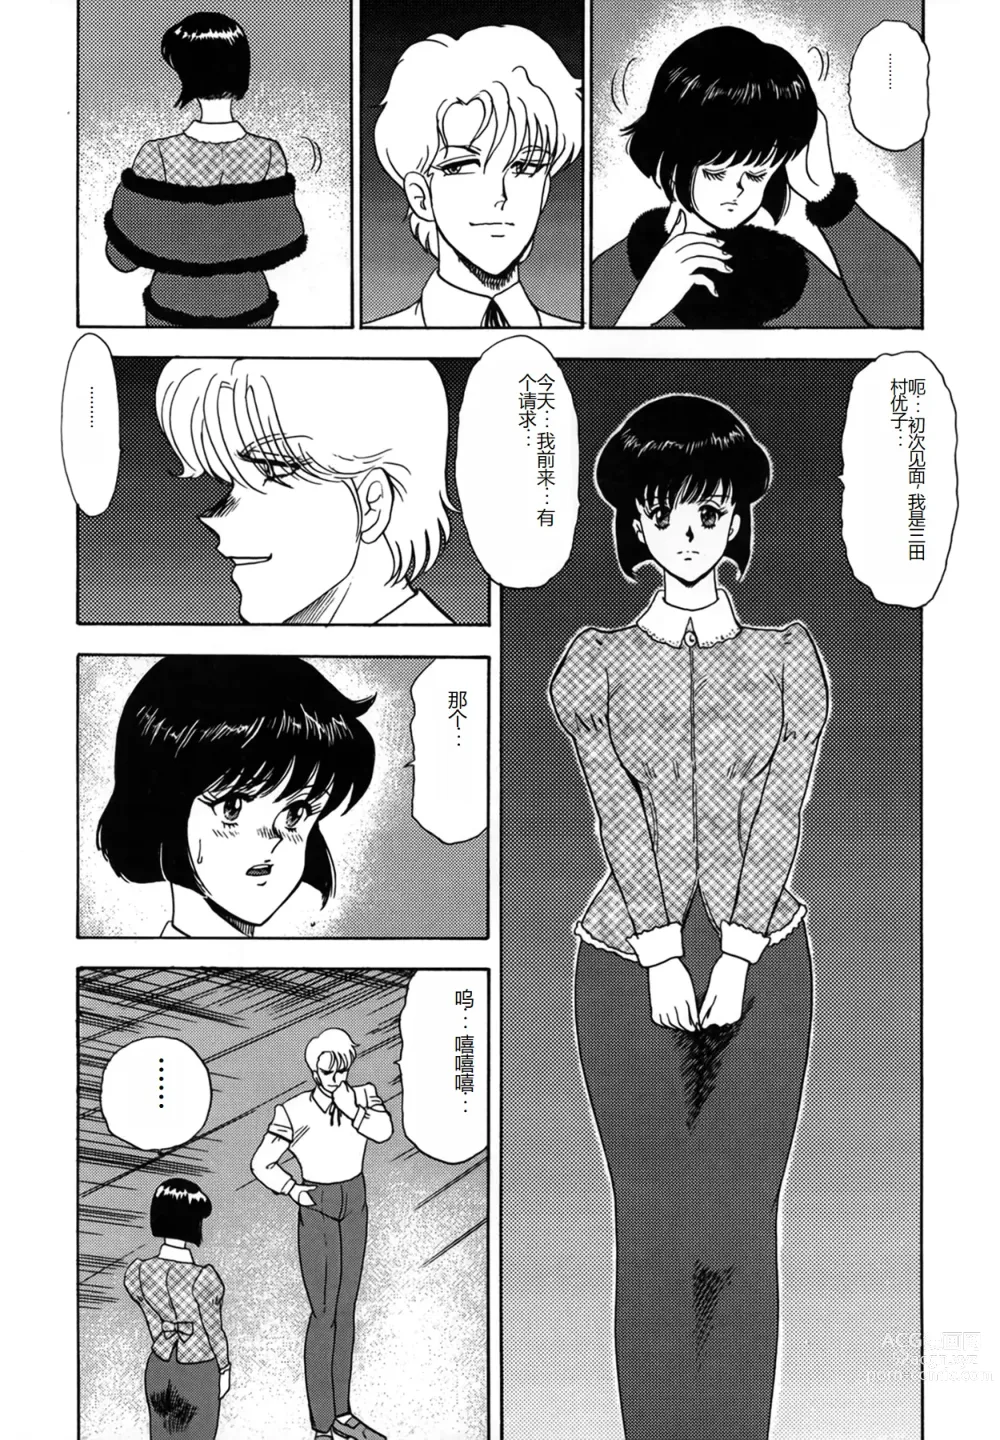 Page 157 of manga Inbi Teikoku